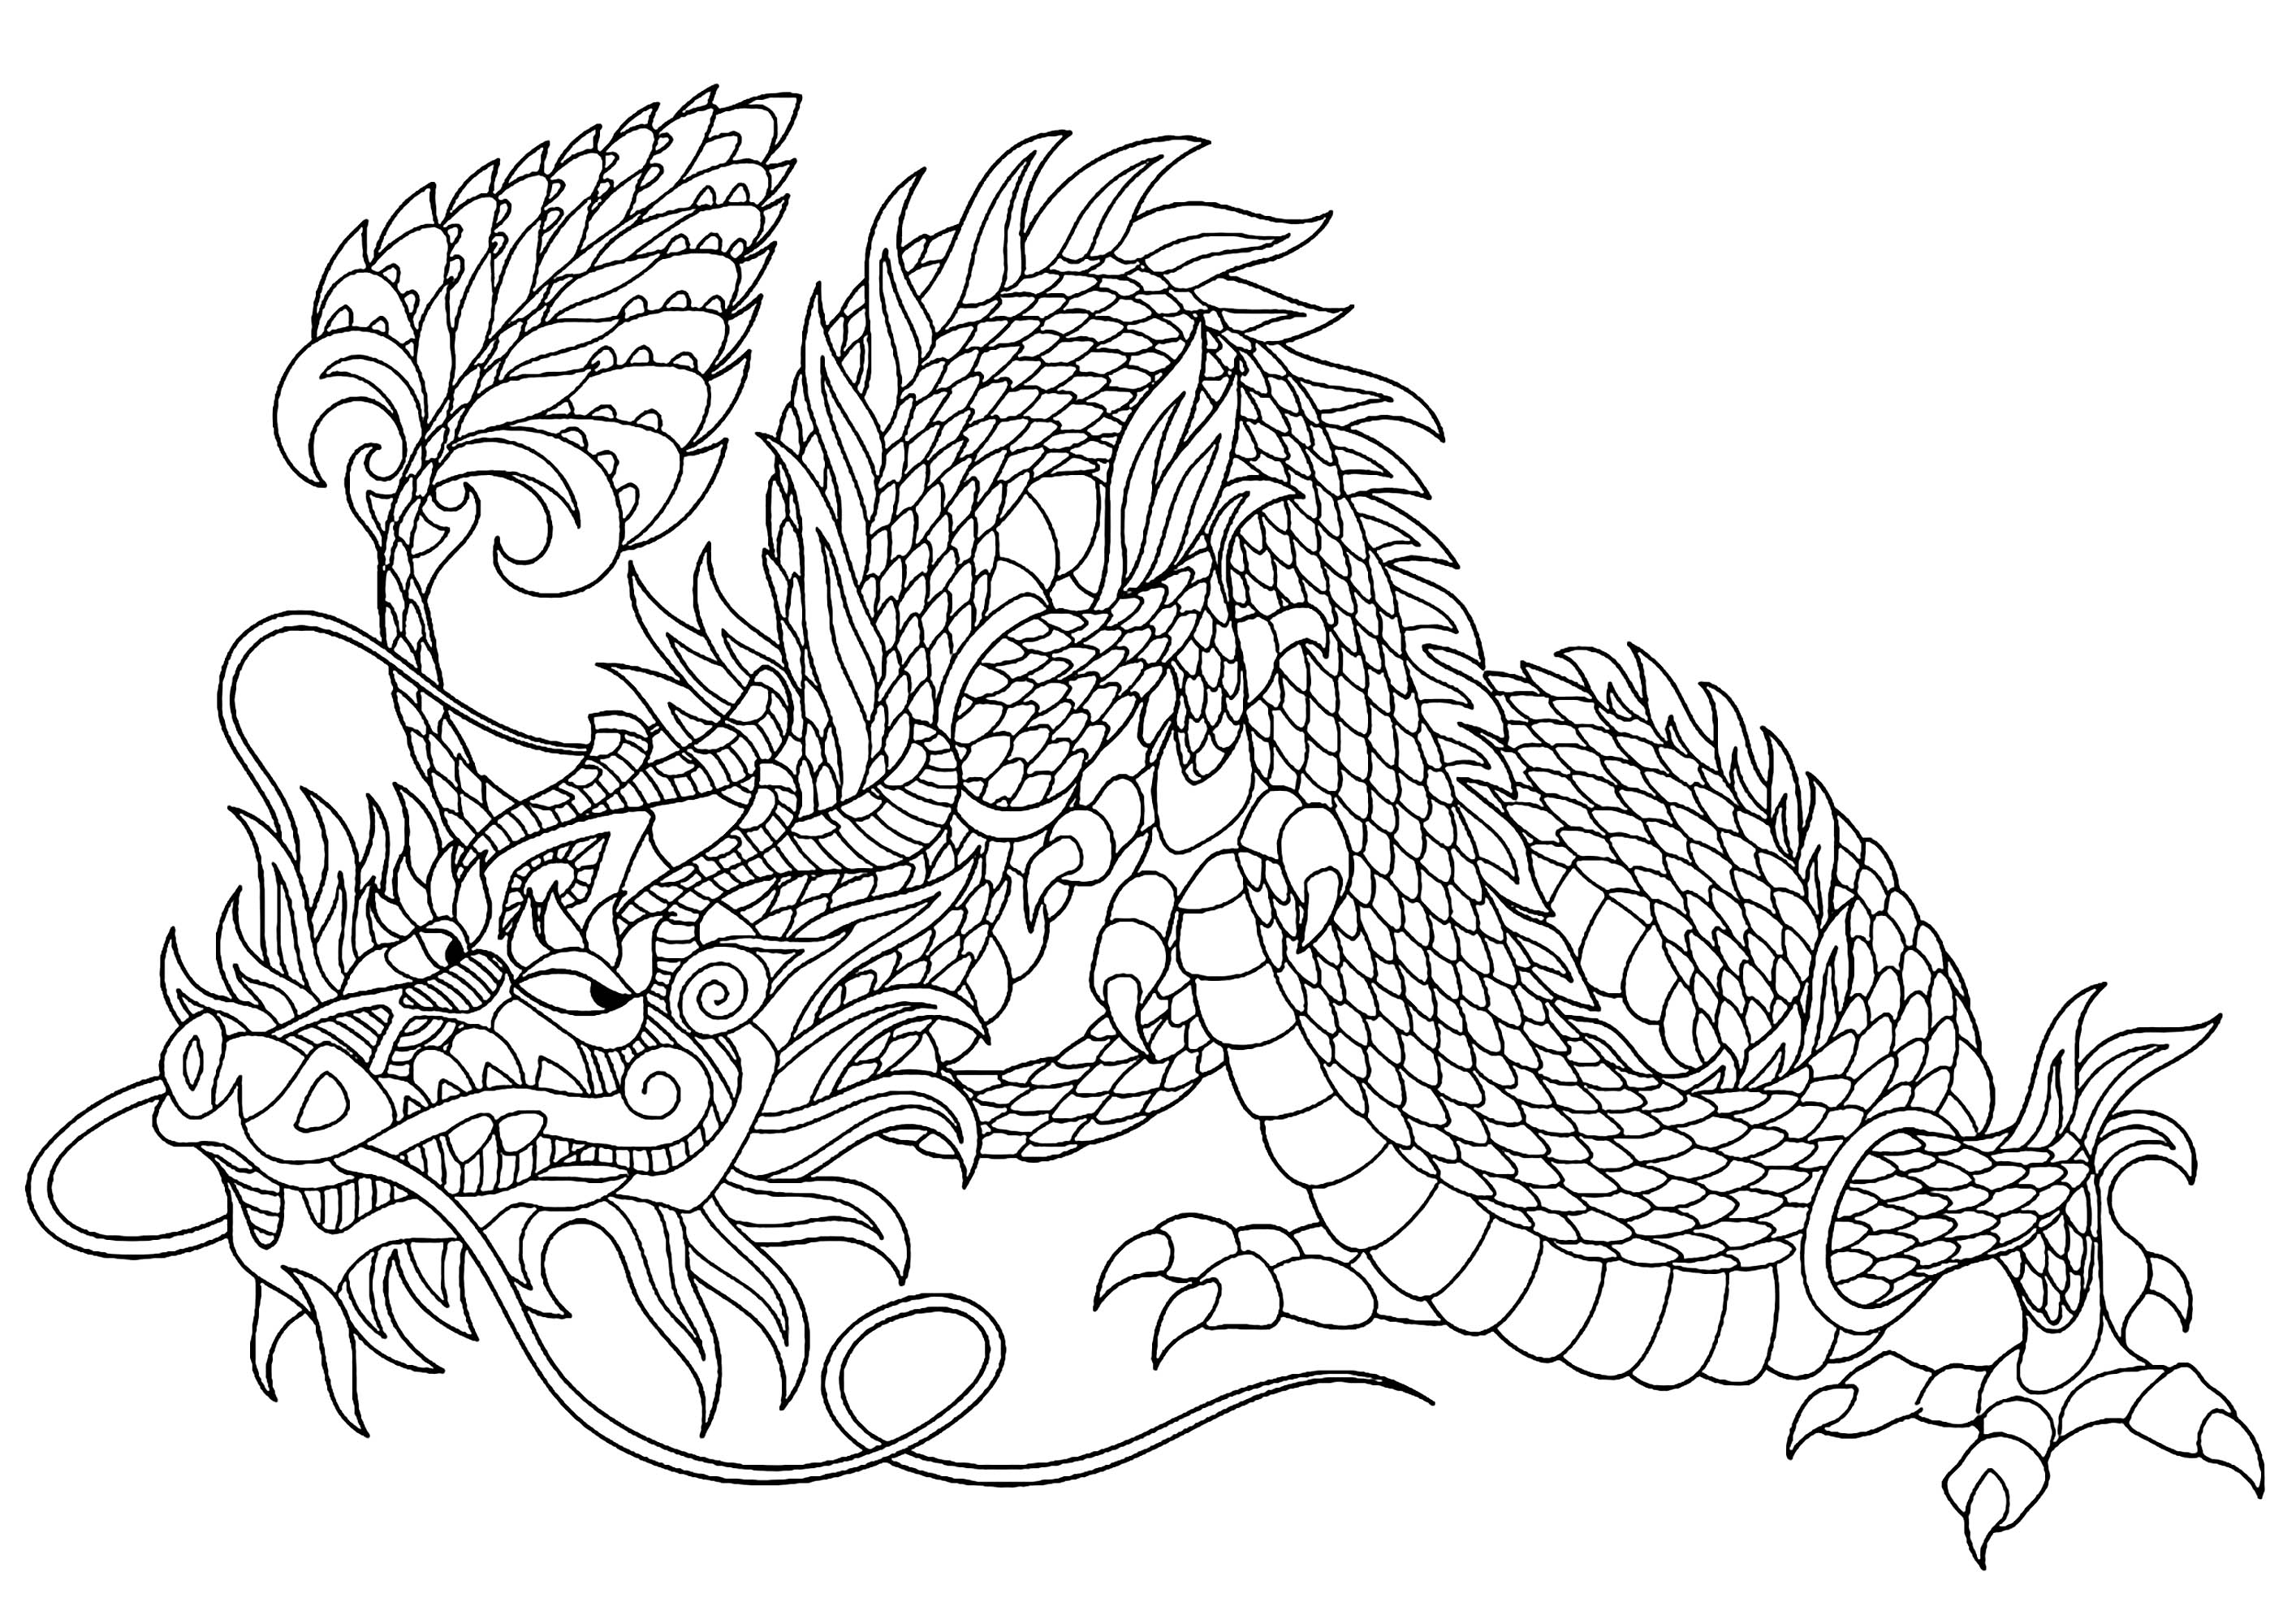 Desenhos grátis para colorir de Dragões para baixar, Fonte : 123rf   Artista : Sybirko